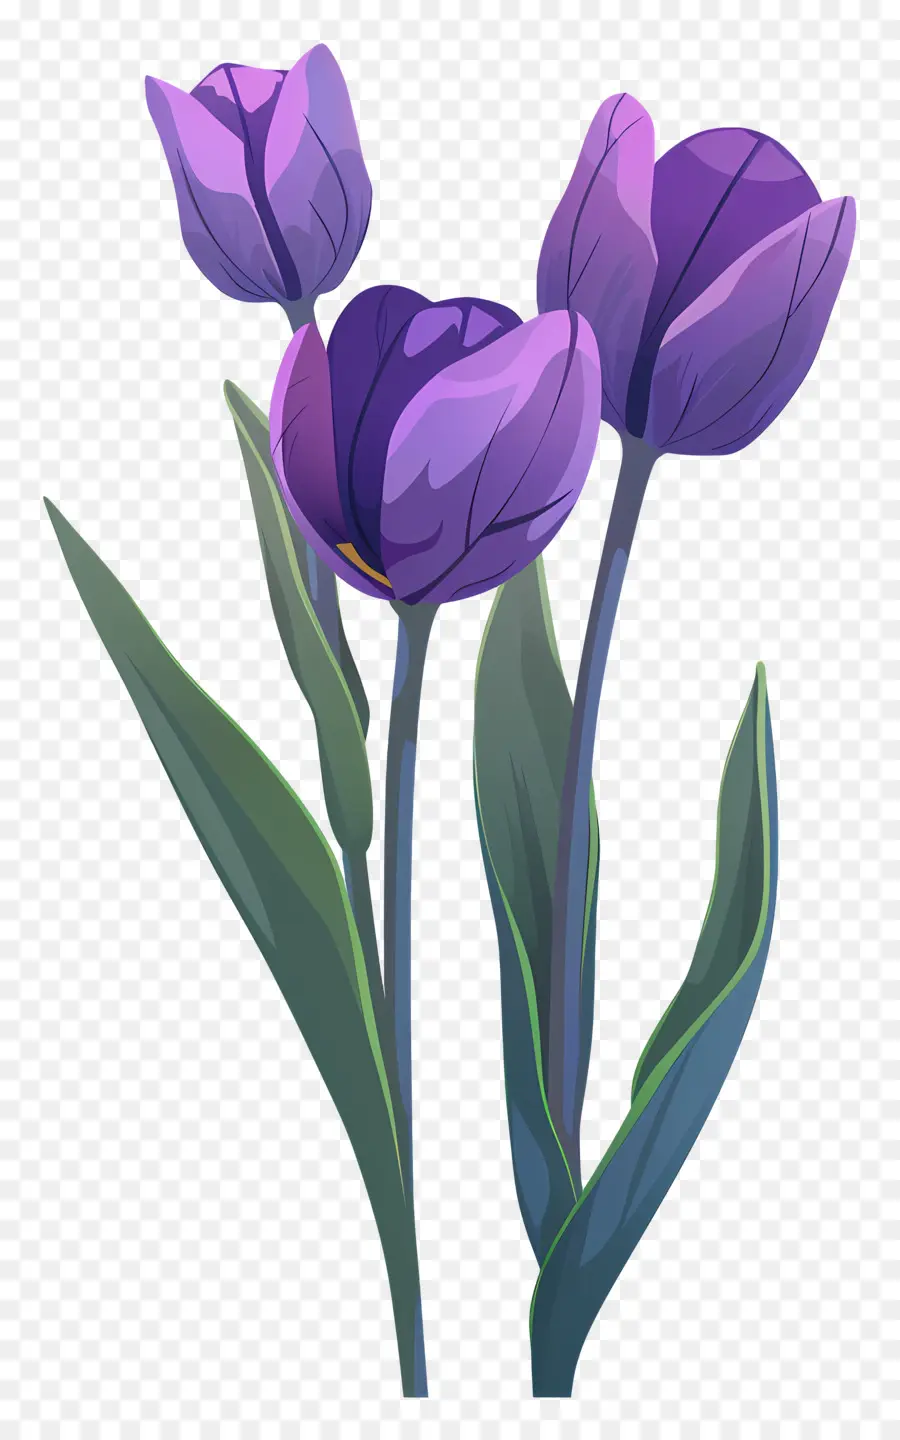 Vườn Hoa - Ba hoa tulip màu tím trên nền tối